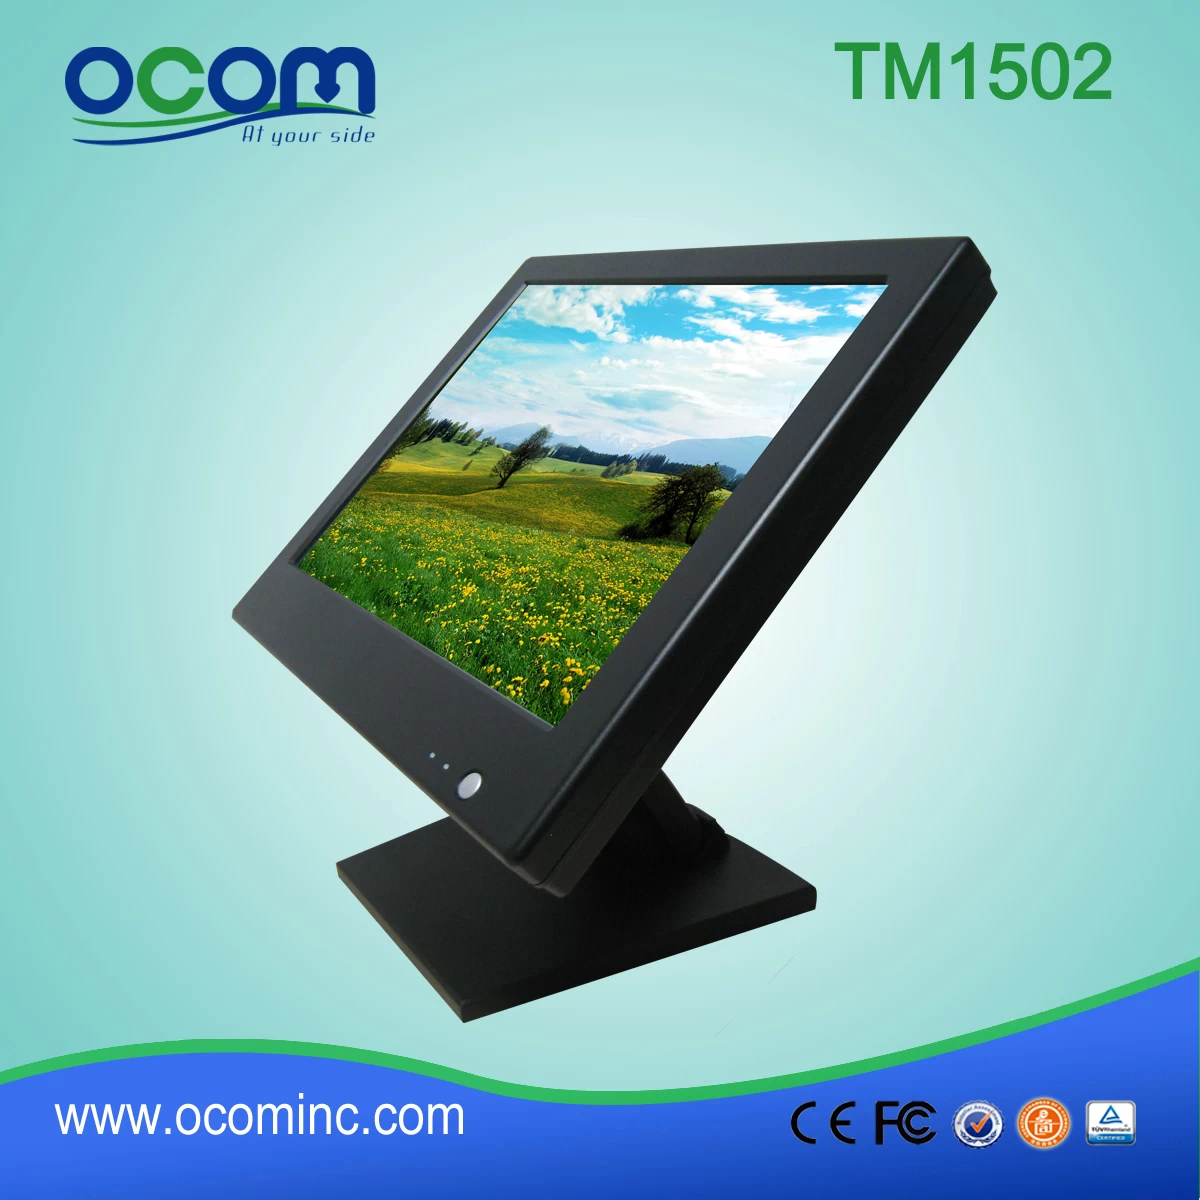 TM1502 Moniteur LCD moniteur LCD 15 pouces flexible